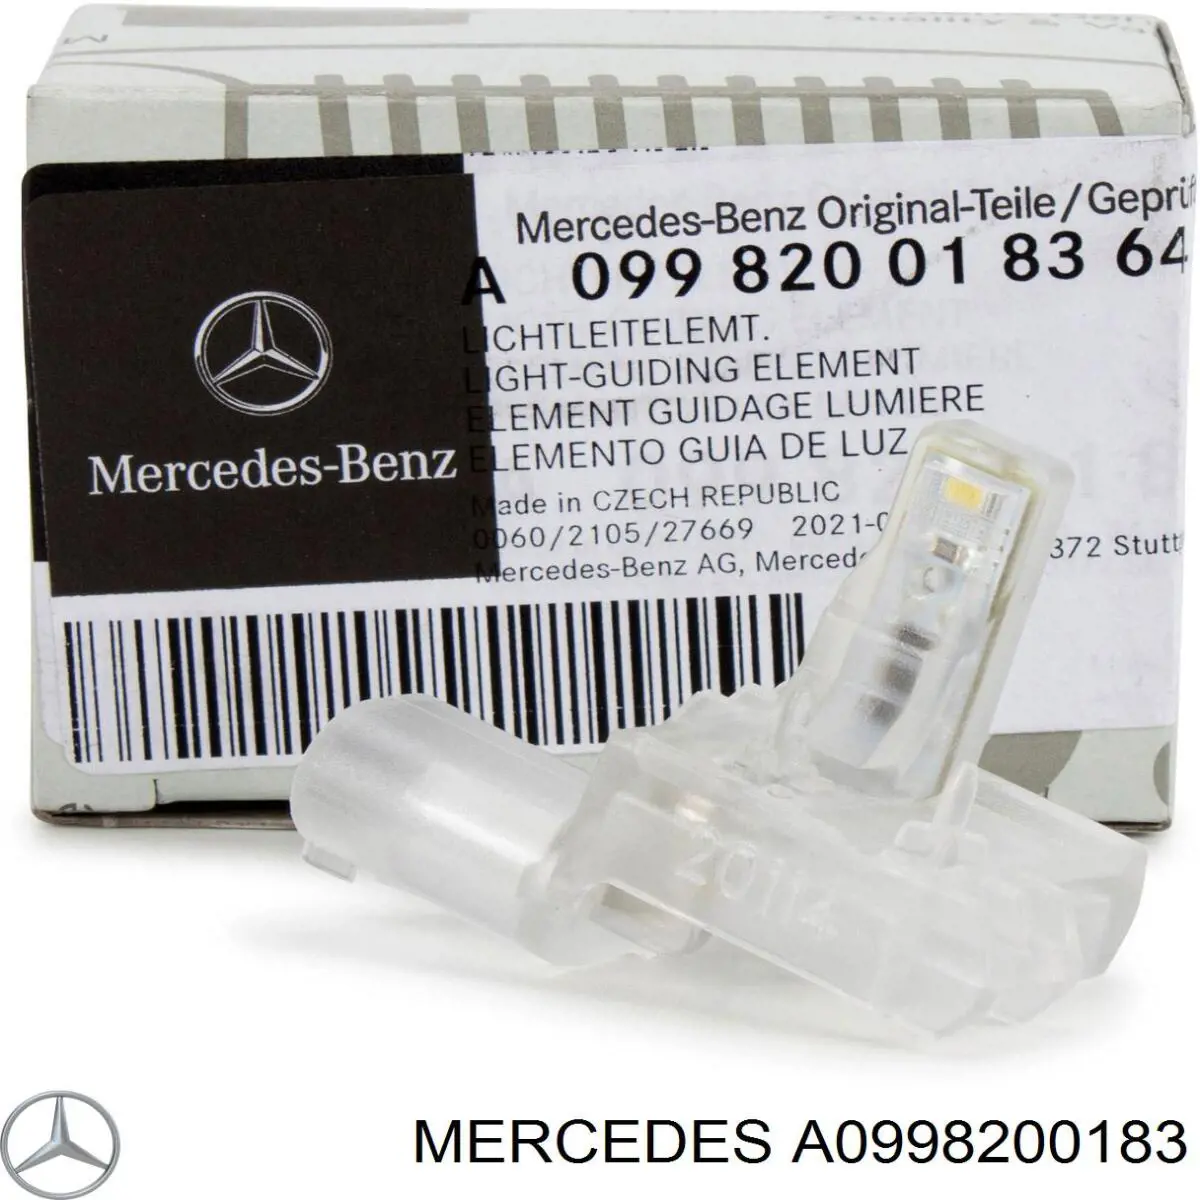 A0998200183 Mercedes lanterna da luz de fundo de maçaneta da porta dianteira